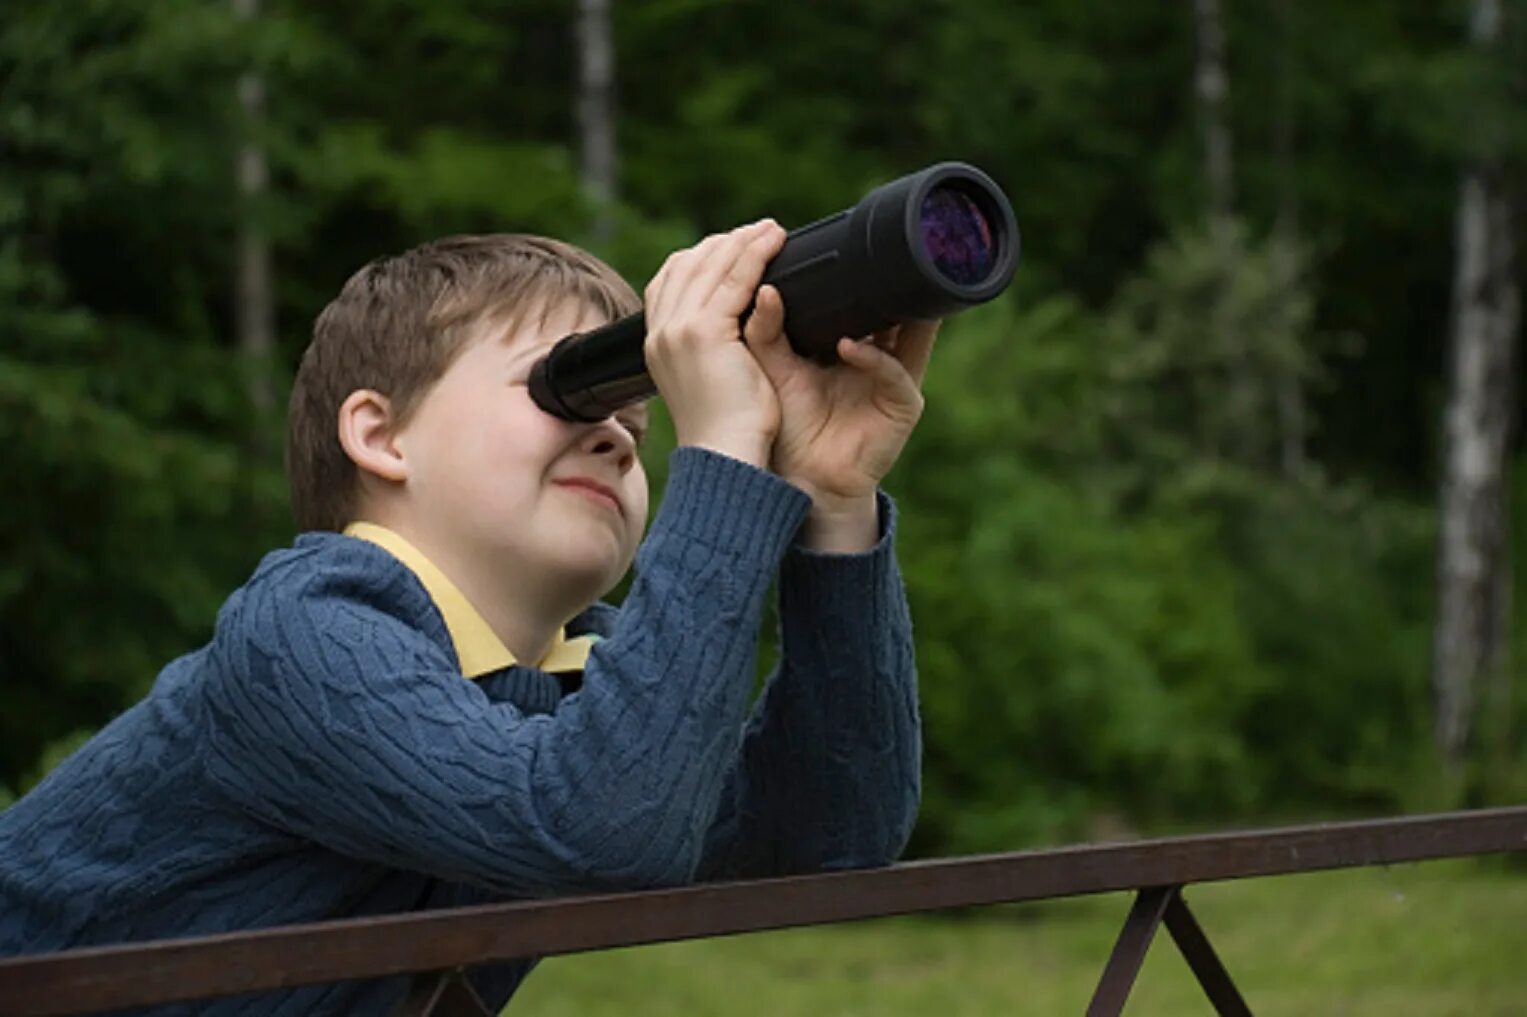 Наблюдение за животными какая наука. За тобой следит подзорная труба. Мальчик мальчик смотрит в подзорную трубу. Фото маленького мальчика смотрящего в телескоп из окна дома.